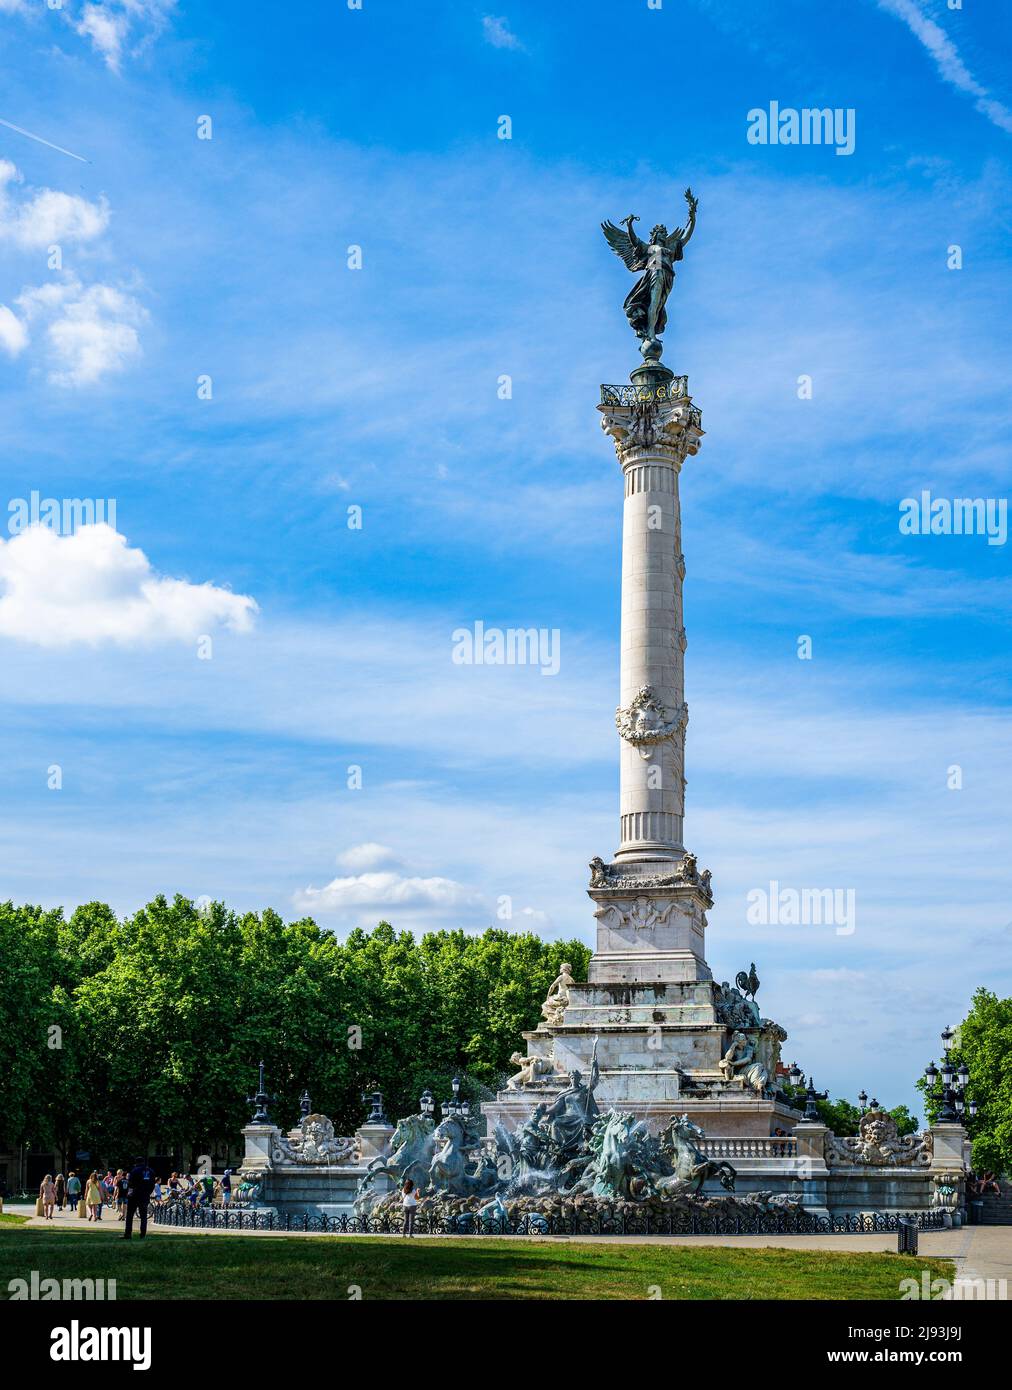 Monumento a los Girondins, Place des Quinconces, Burdeos, Francia - emblemático de la Revolución Francesa en Burdeos con el famoso monumento y fuentes Foto de stock